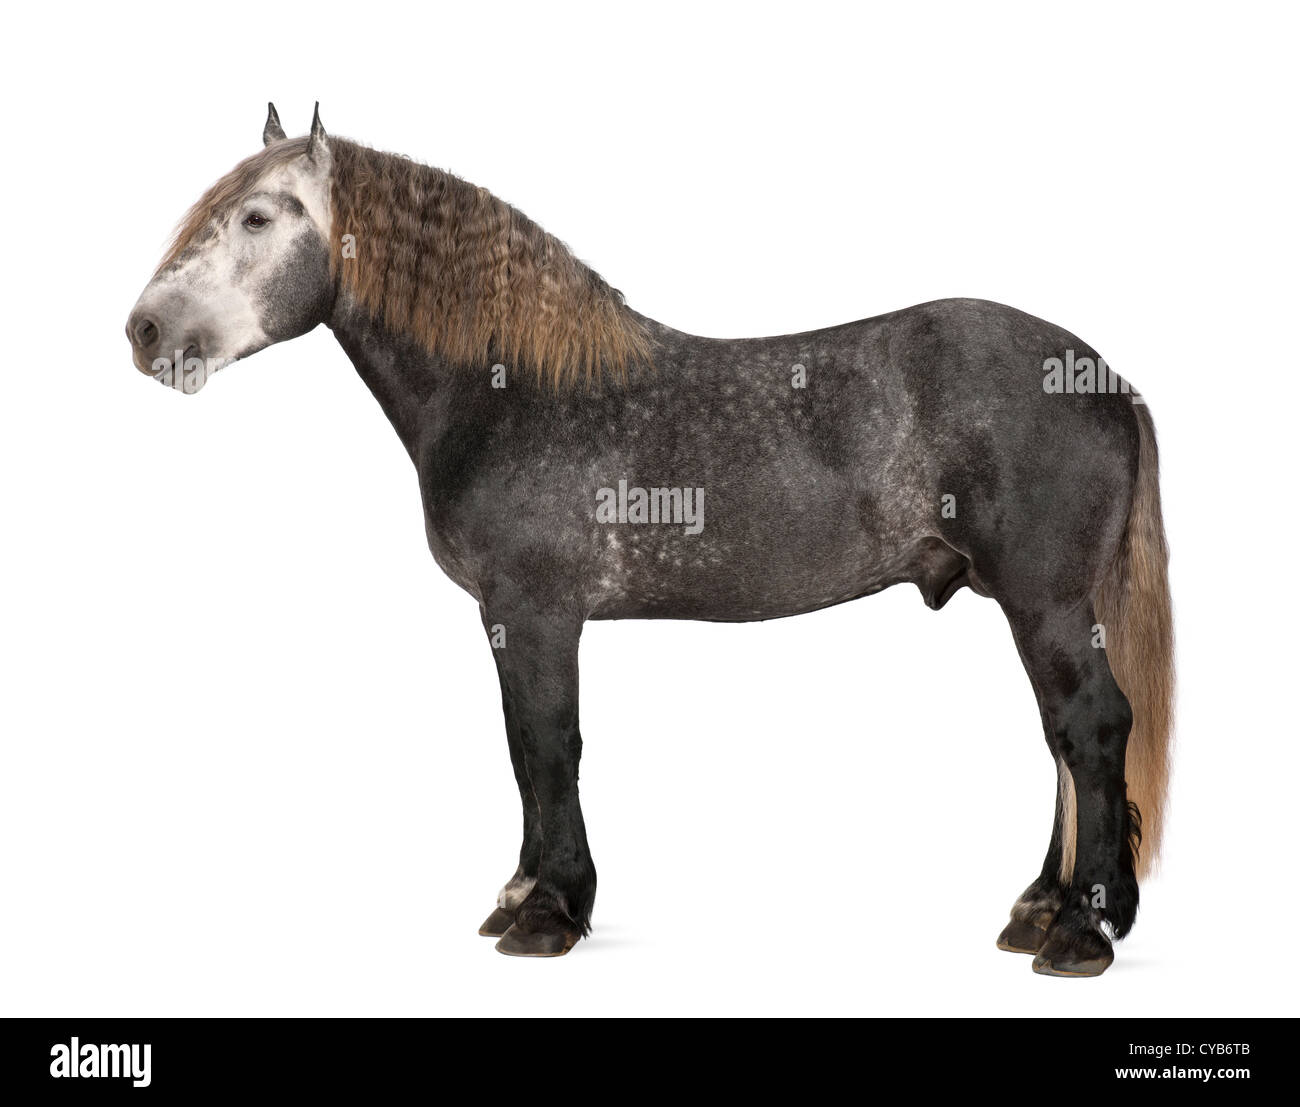 Percheron, 5 ans, une race de chevaux de trait, standing against white background Banque D'Images